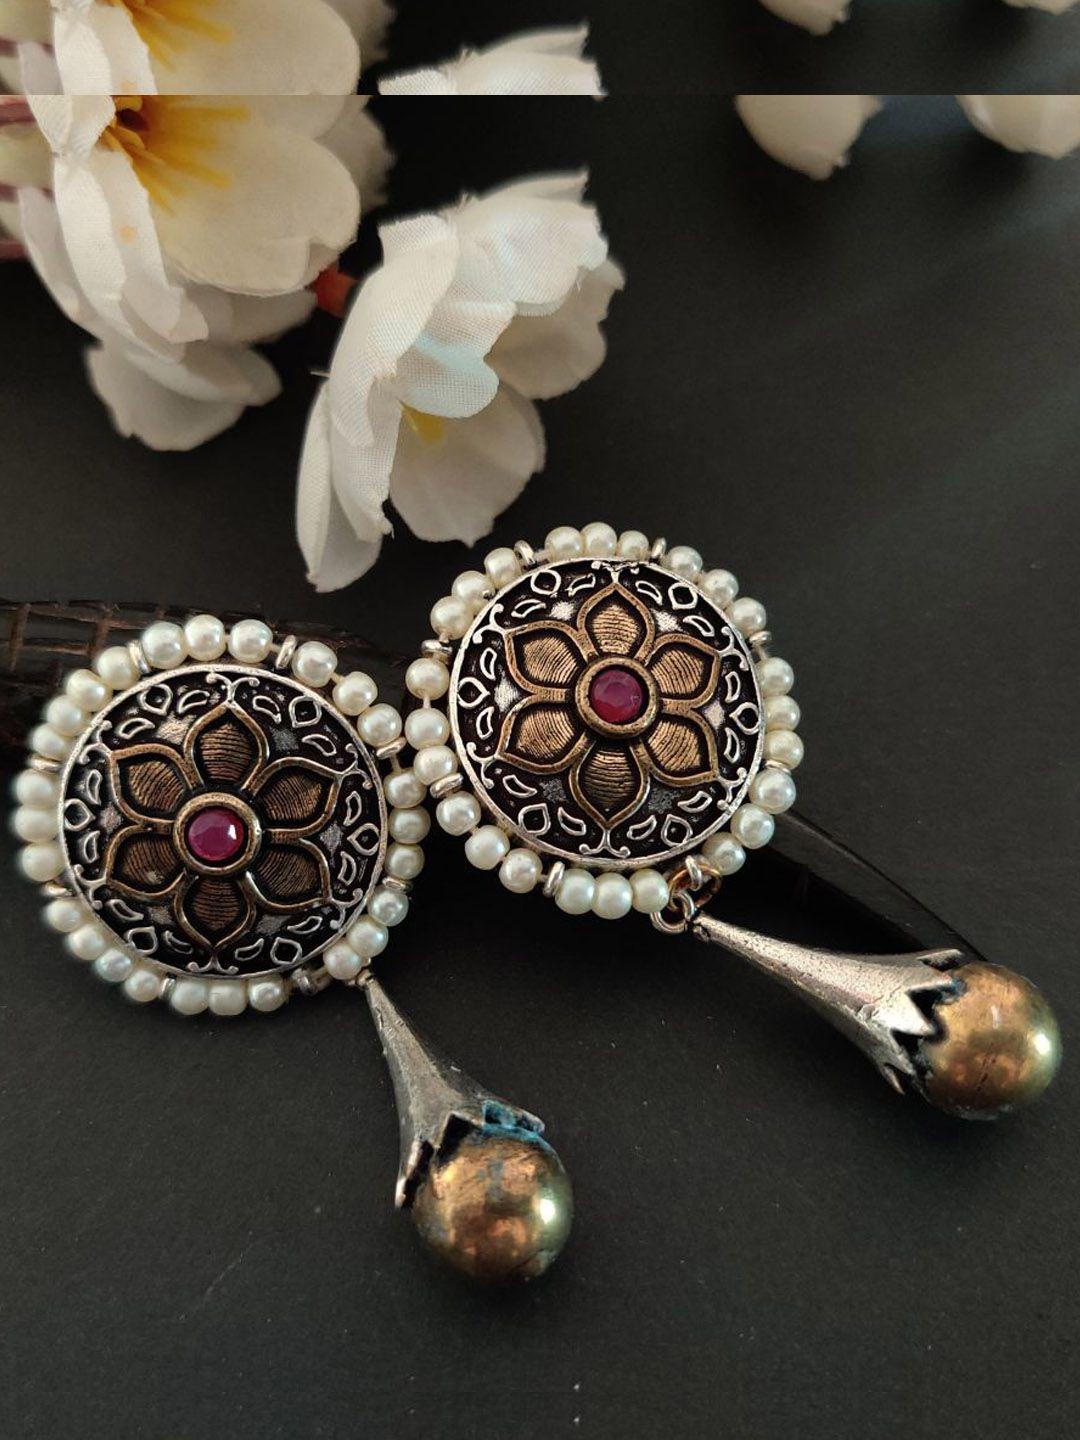 binnis wardrobe silver-toned contemporary drop earrings